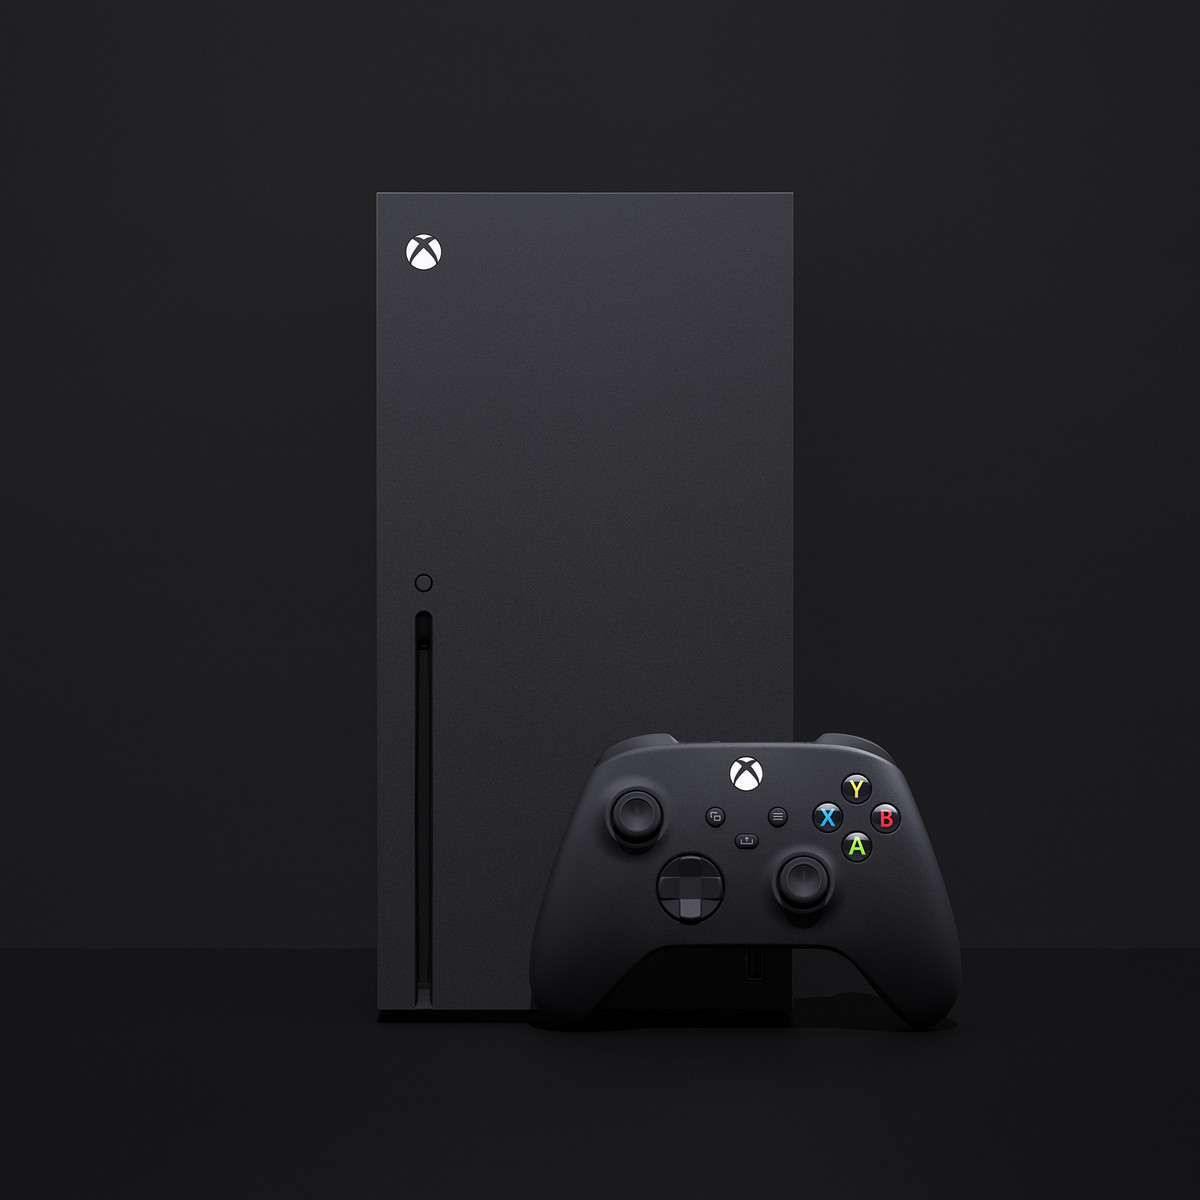 انٹون لائن پر Xbox سیریز X کے بنڈلز $399.99 میں رعایتی ہیں۔